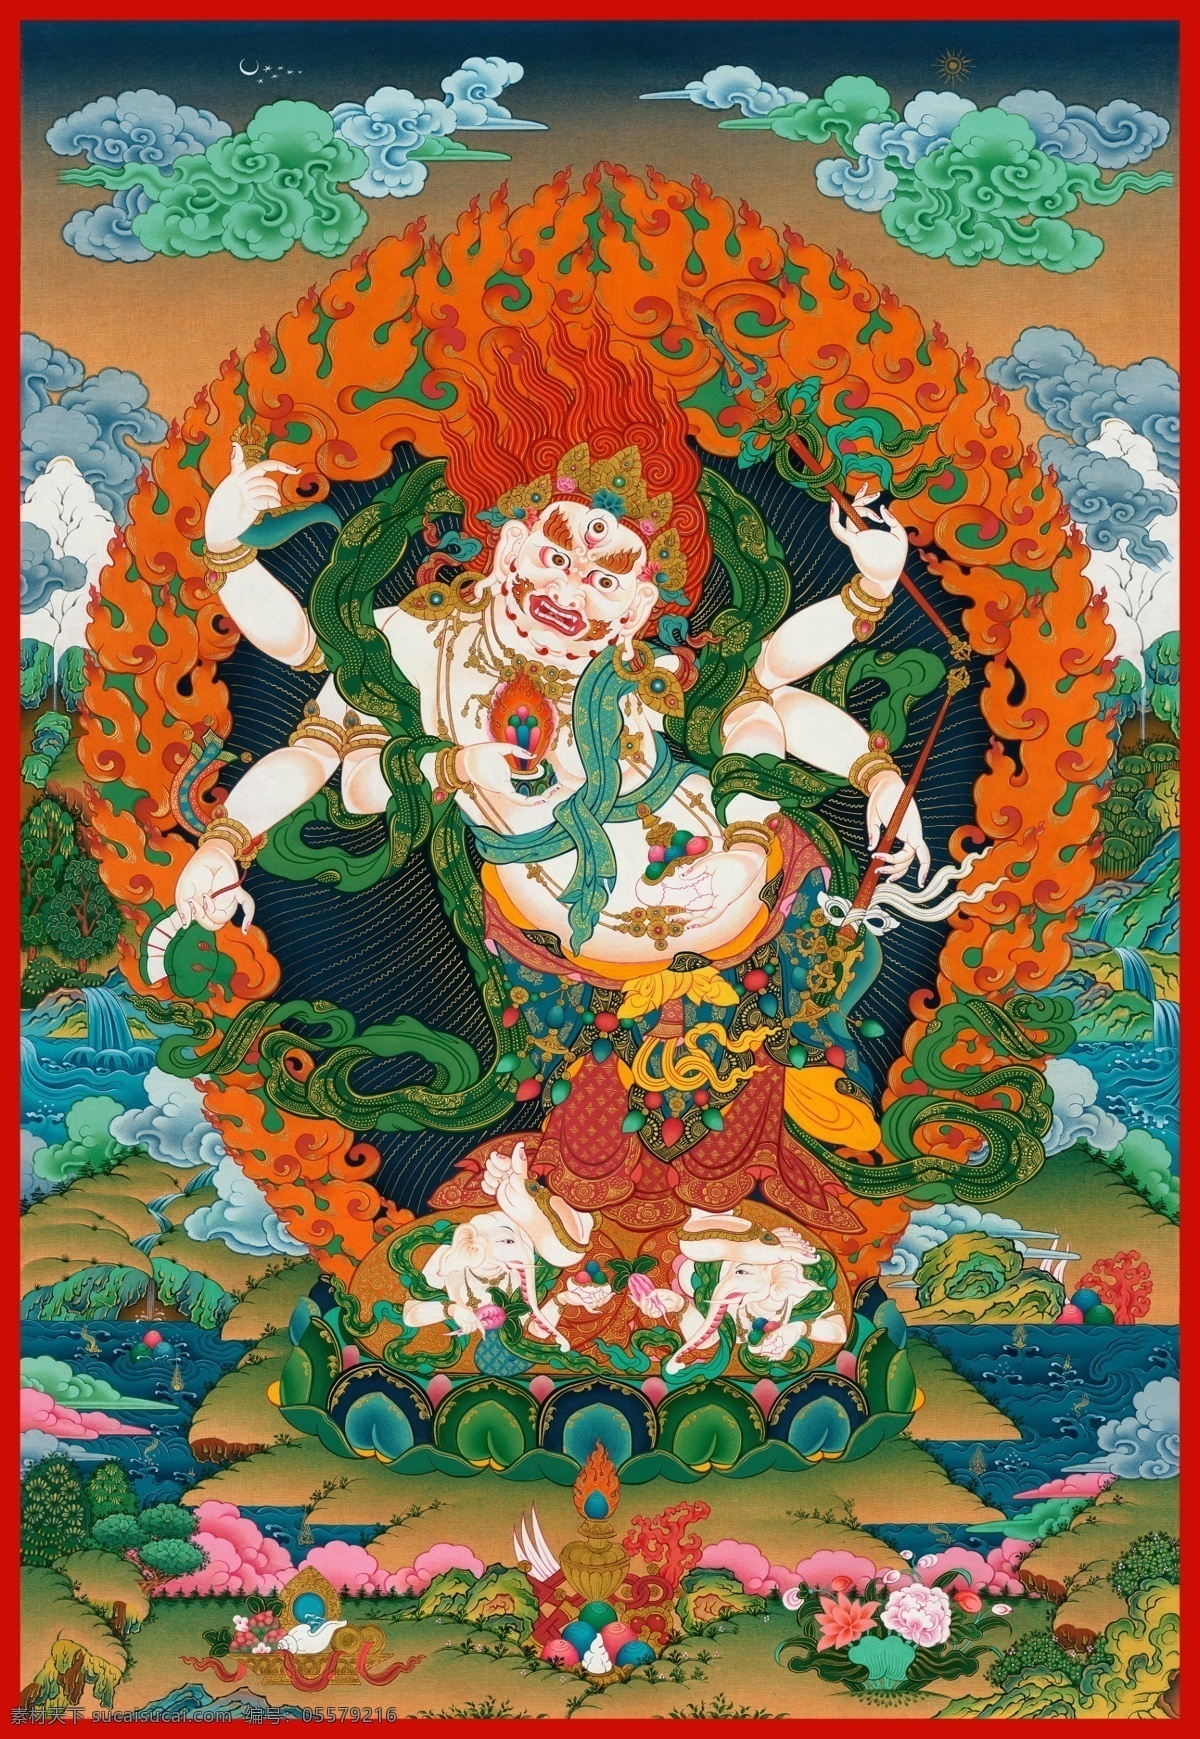 唐卡 藏传佛教 宗教 文化 佛像 壁画 手绘 文化艺术 宗教信仰